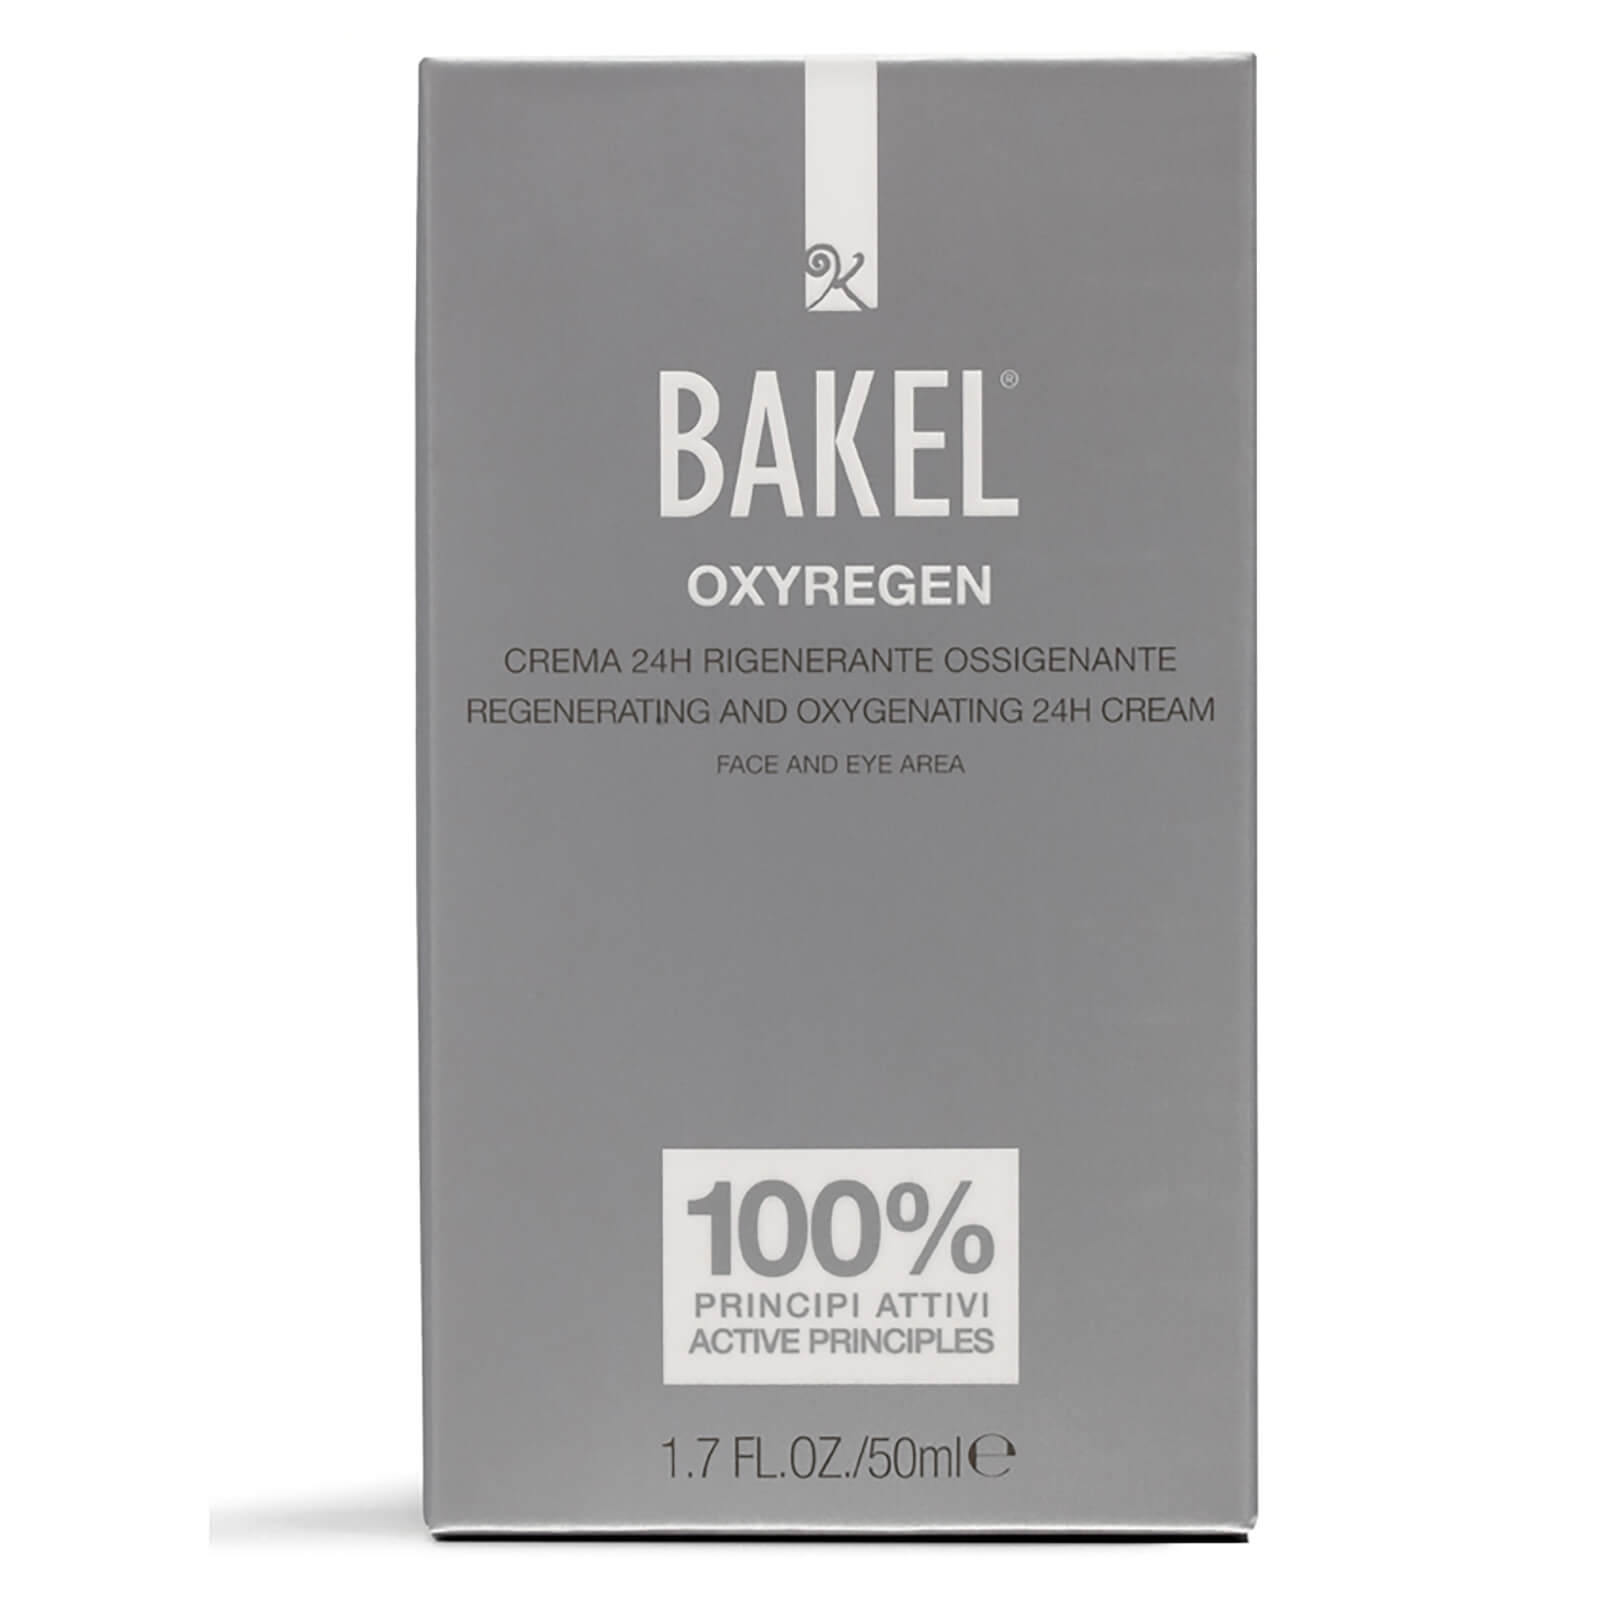 Crema regeneradora y oxigenadora 24H Oxyregen de BAKEL (50 ml)